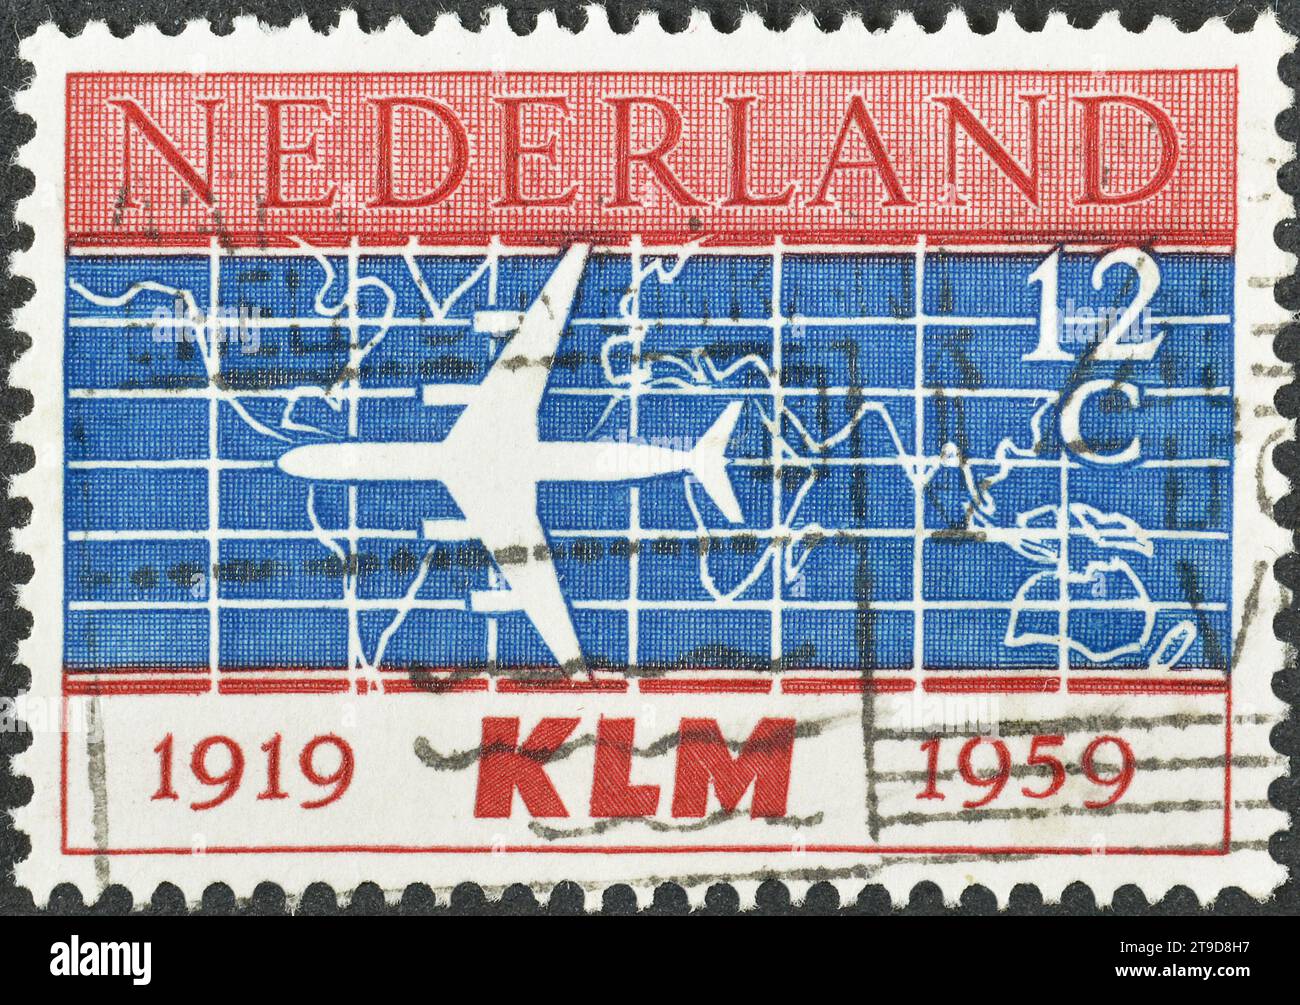 Timbre postal annulé imprimé par les pays-Bas, qui montre Silhouette de Douglas DC-8 Airliner et carte du monde, 40e anniversaire de KLM Banque D'Images